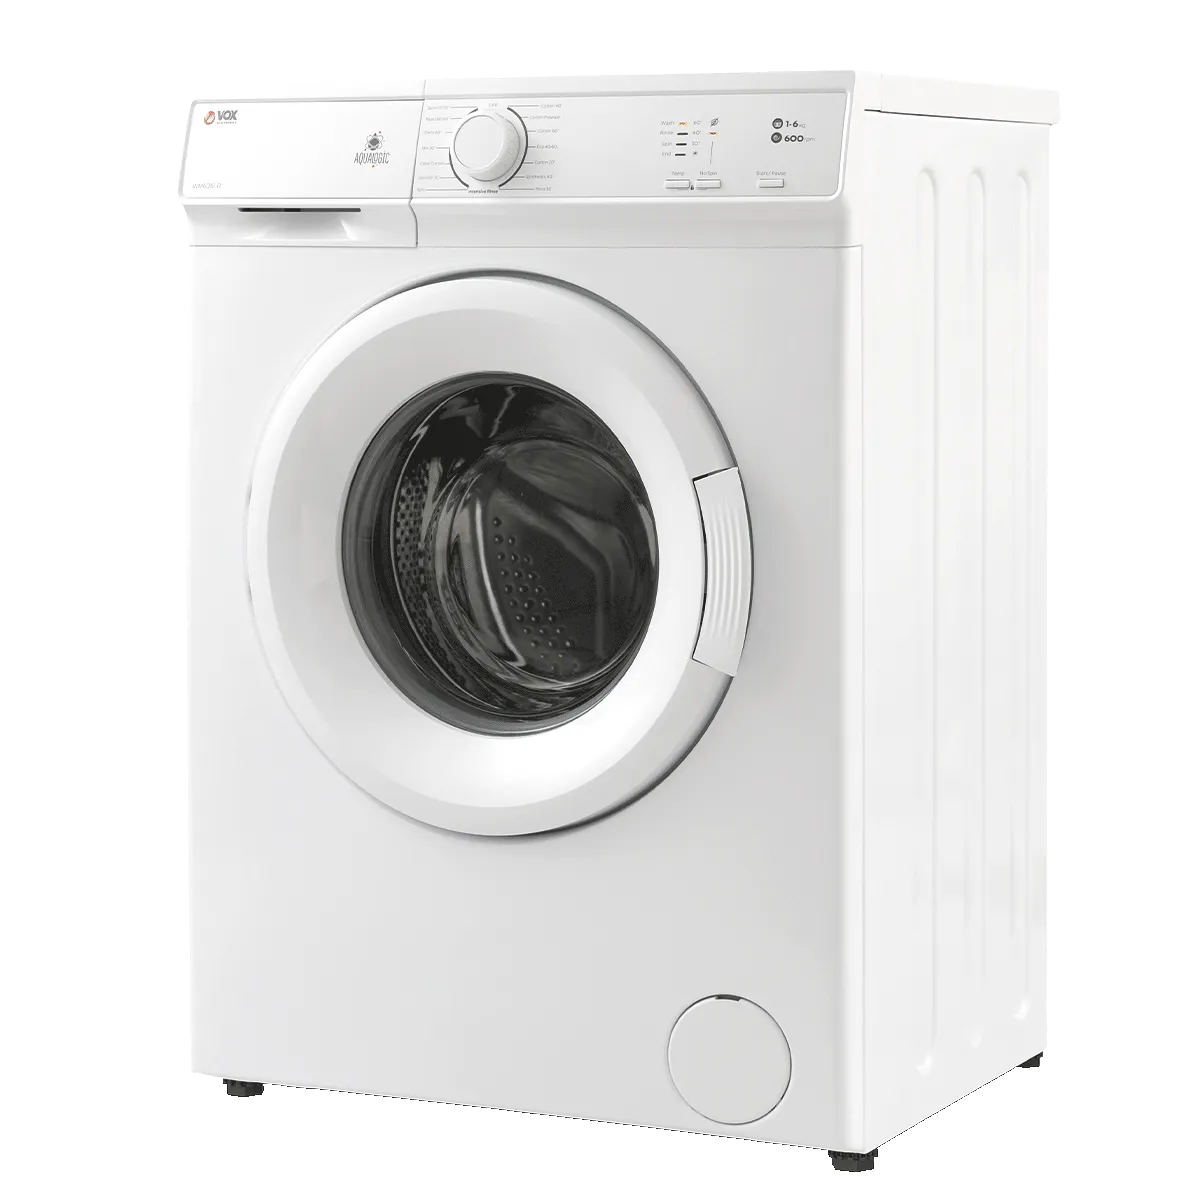 Washing machine WM6061-D 